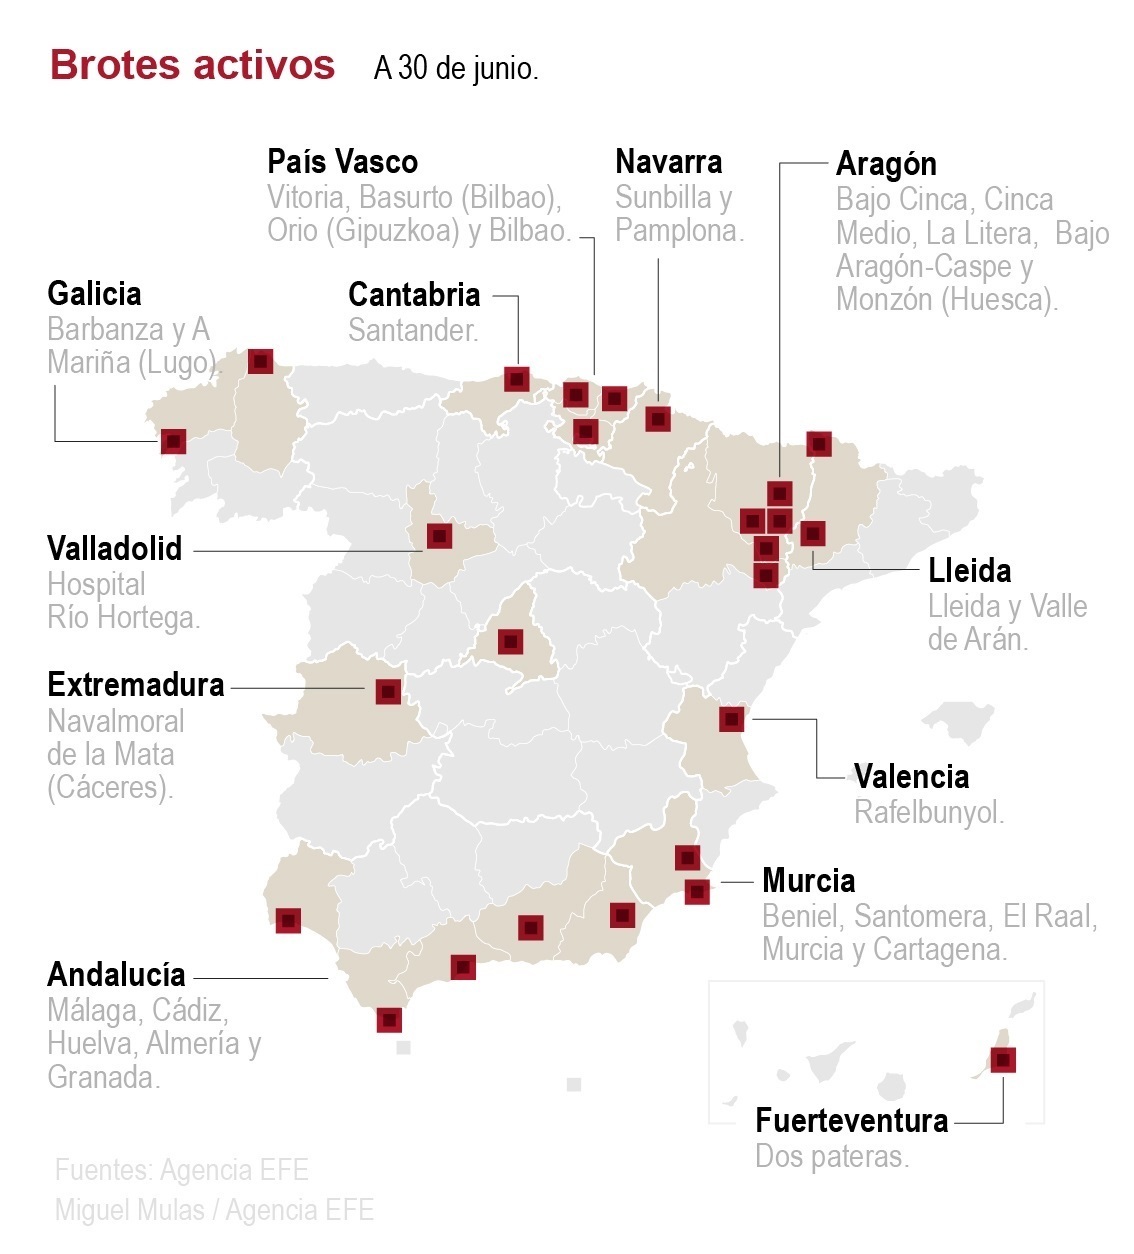 Brotes activos de coronavirus en España a 1 de julio de 2020